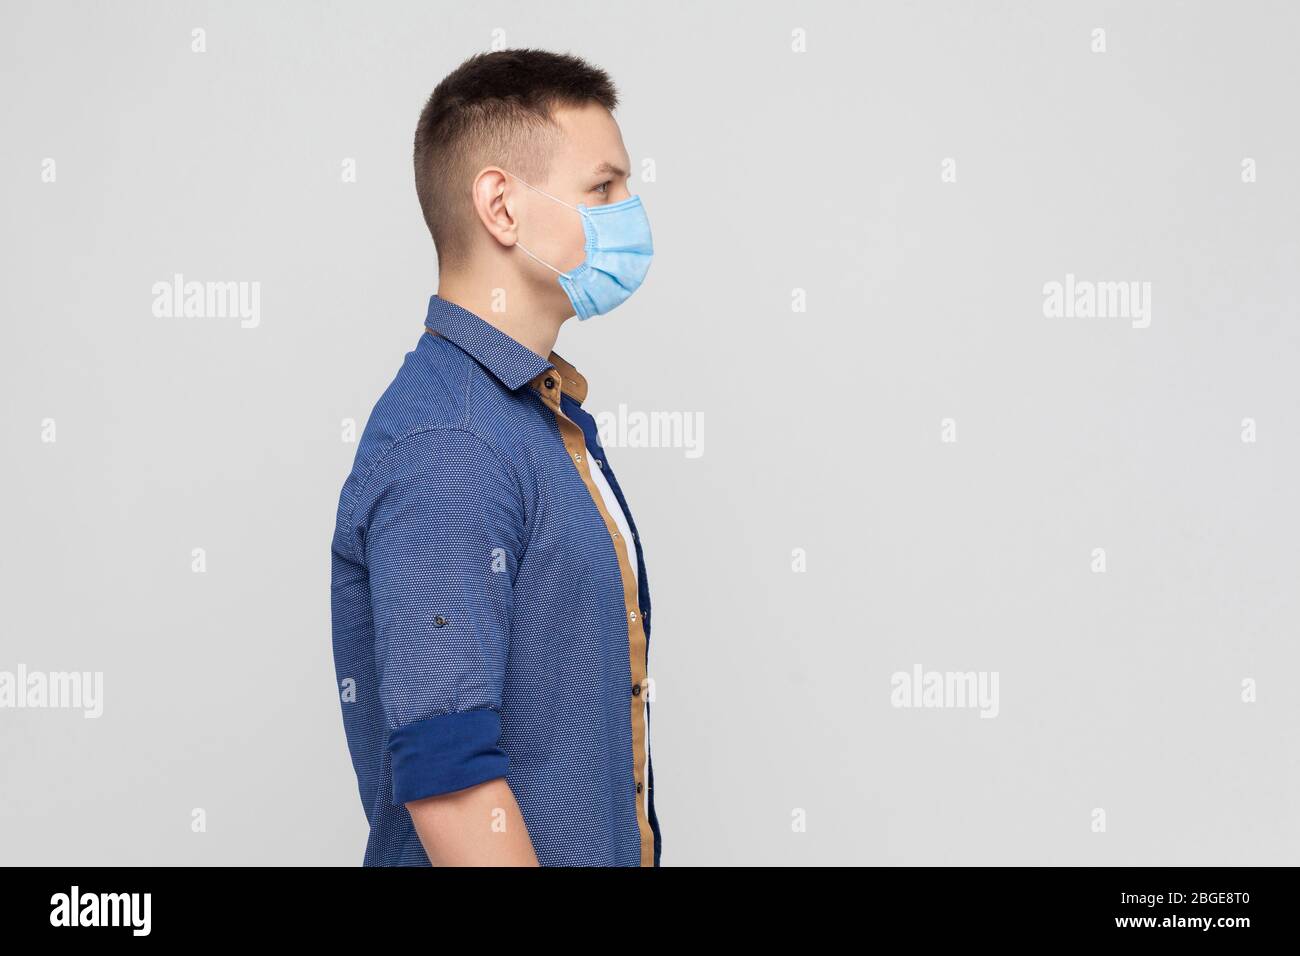 Vista laterale, protezione contro le malattie contagiose, coronavirus. Uomo con maschera igienica per prevenire infezioni, malattie respiratorie trasmesse dall'aria, Covid-201 Foto Stock